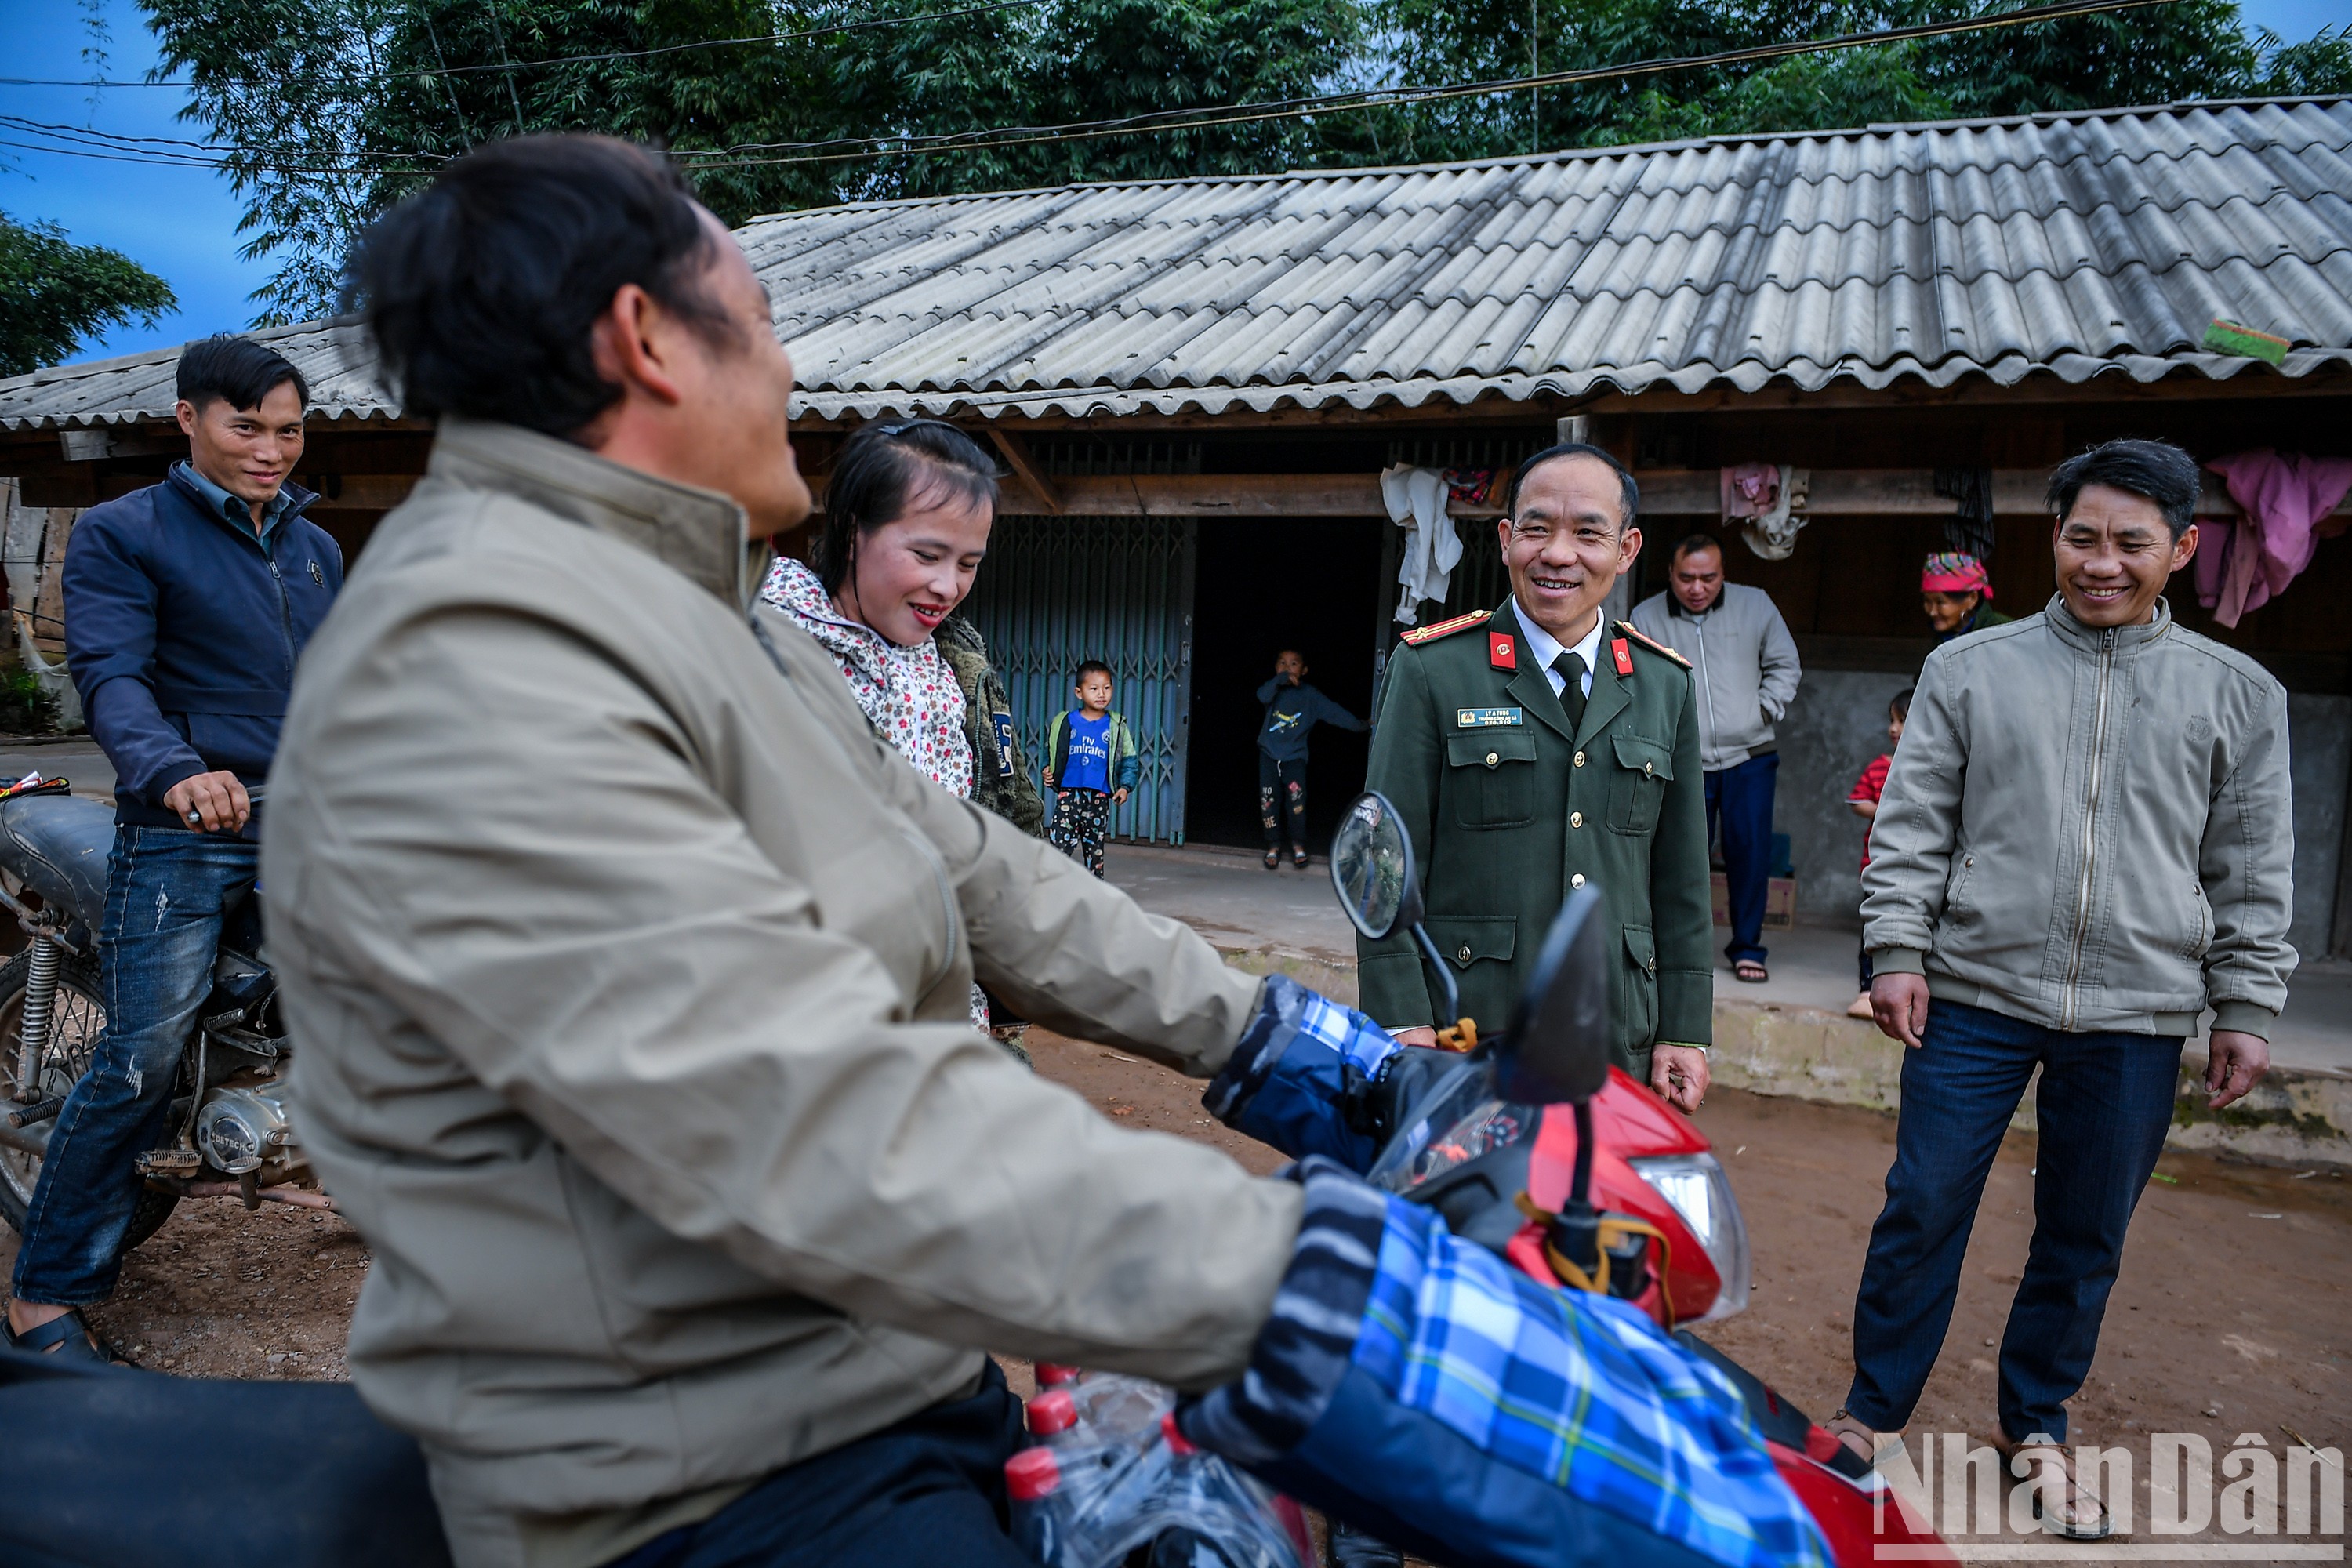 Trung tá Lý A Tung nở nụ cười với những người ngày trước tham gia vụ tụ tập đông người. Hiện tại, tất cả đang đồng lòng xây dựng quê hương.